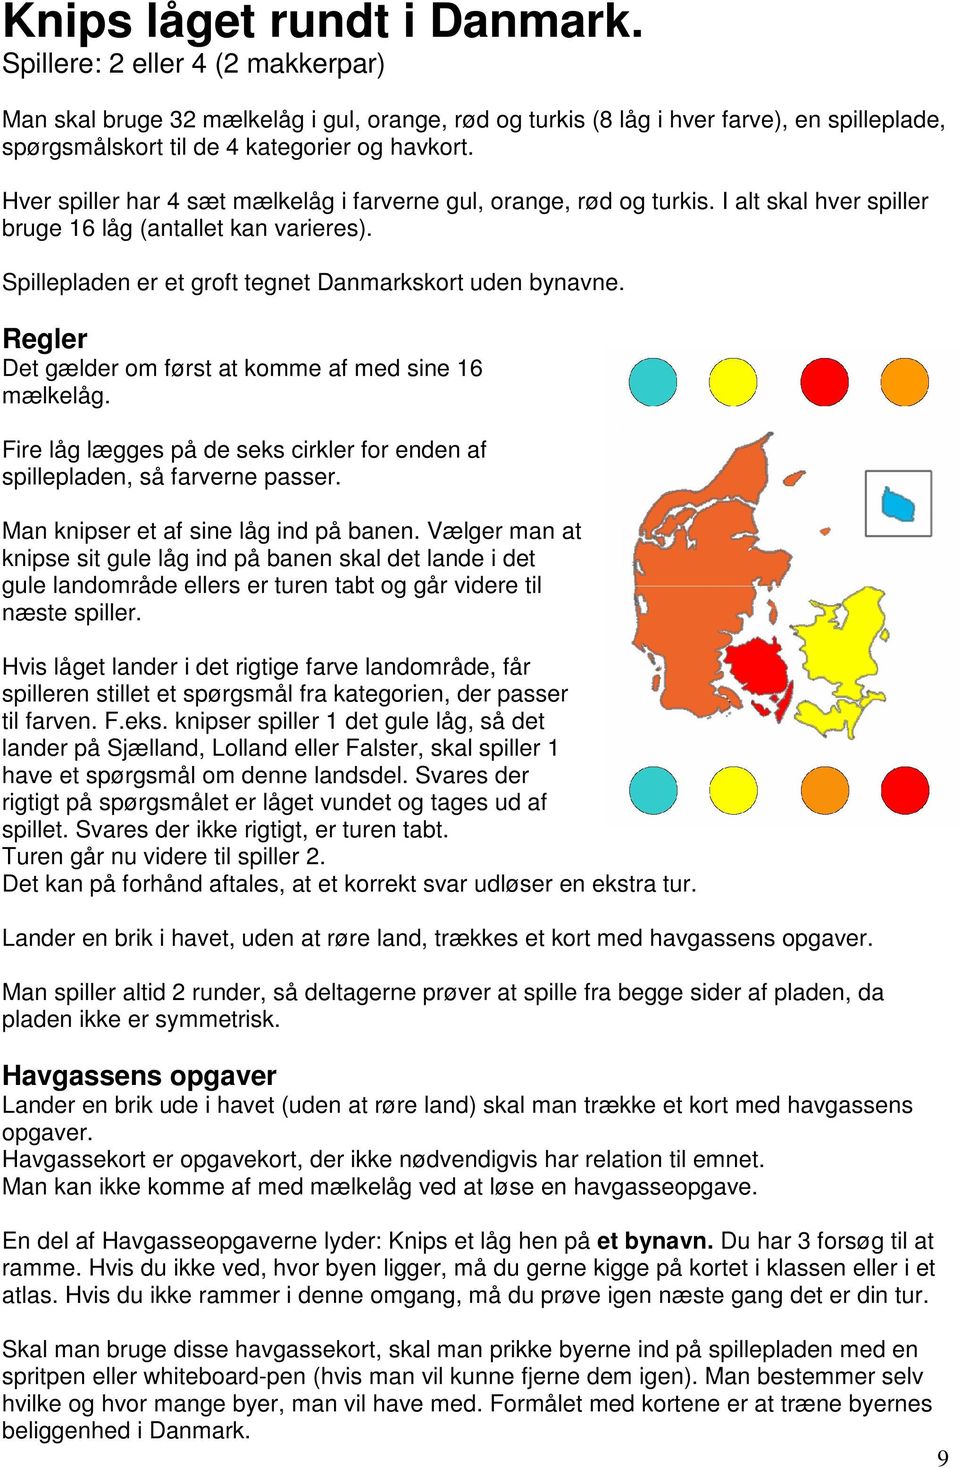 Hver spiller har 4 sæt mælkelåg i farverne gul, orange, rød og turkis. I alt skal hver spiller bruge 16 låg (antallet kan varieres). Spillepladen er et groft tegnet Danmarkskort uden bynavne.